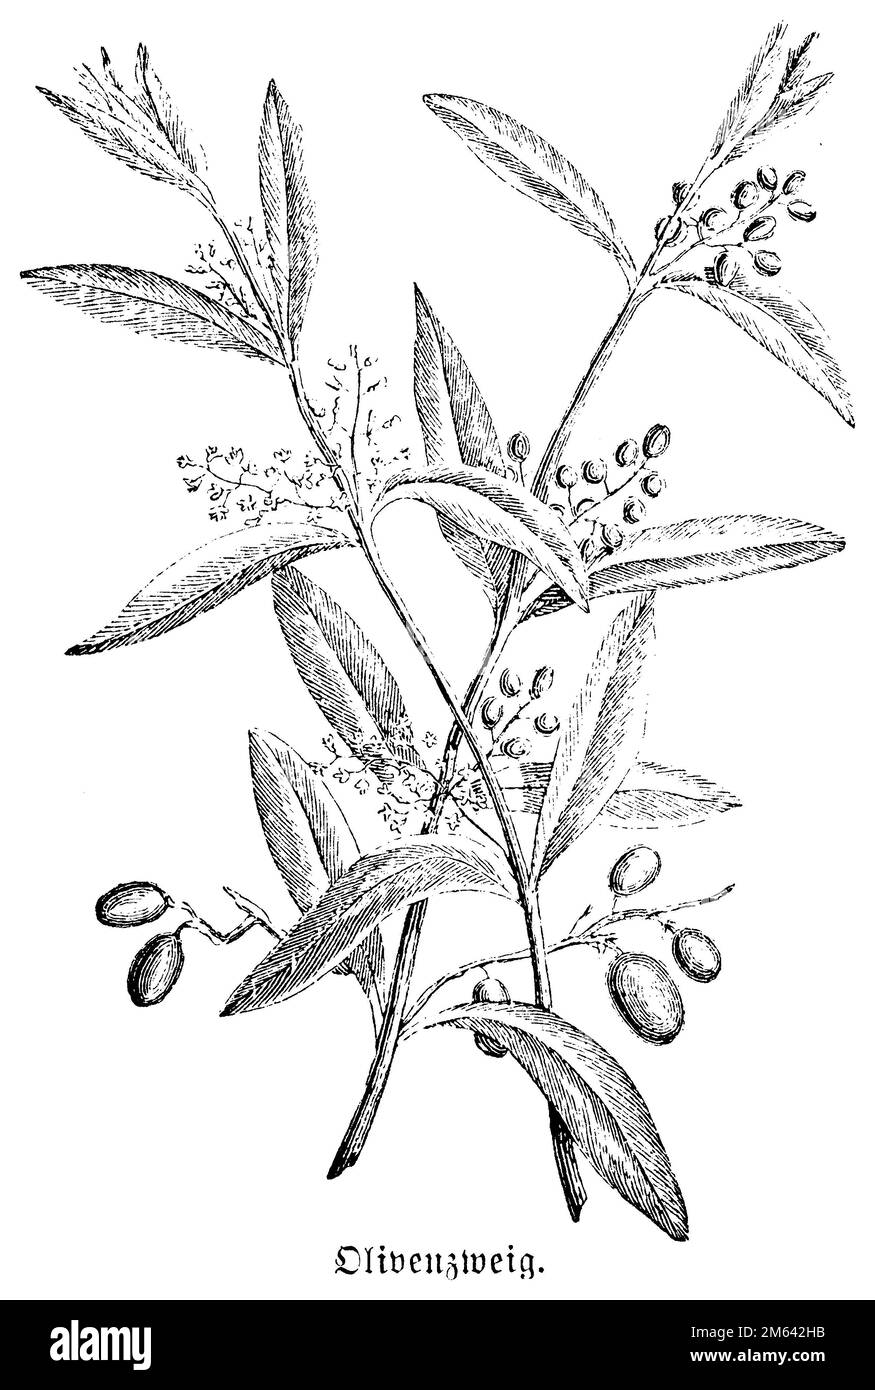 Olive, olive européenne, branche d'olive, Olea europaea, (livre de biologie, 1909), Olivenbaum, Olivenzweig, olivier, rameau d'olivier Banque D'Images